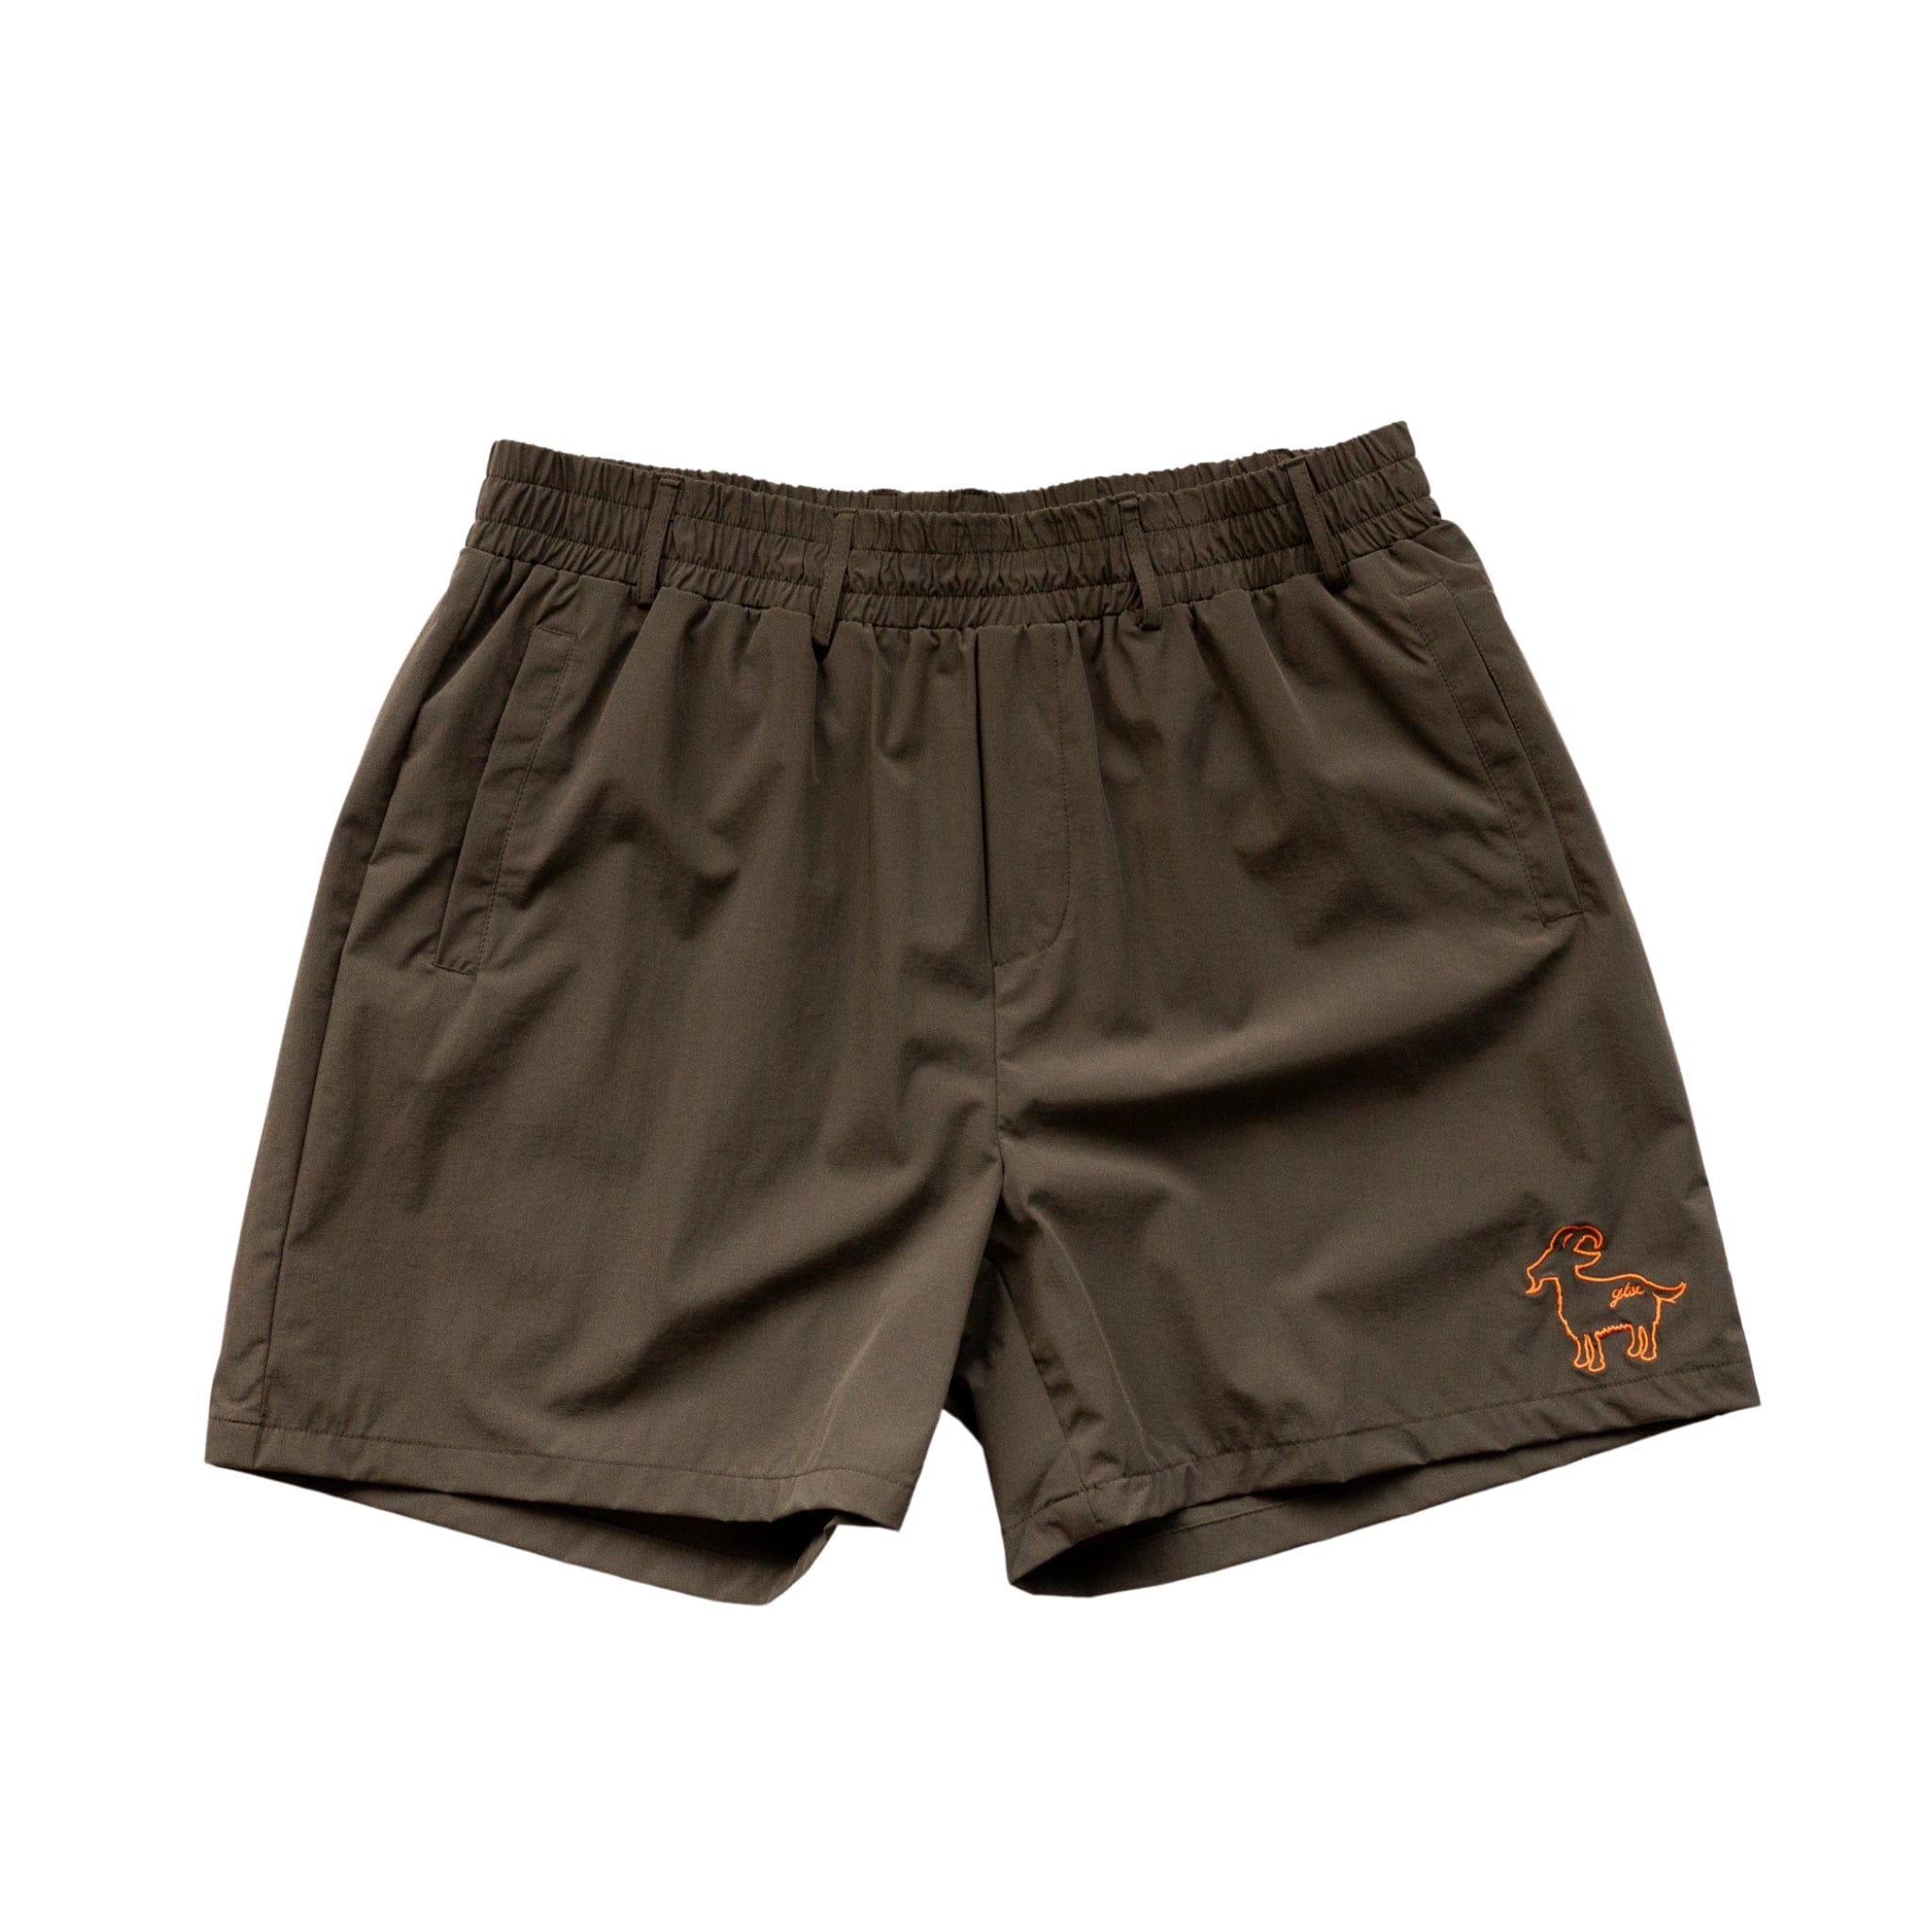 MOE CC Shorts Shorts Canada-Golf-Lifestyle-Clothing-Brand